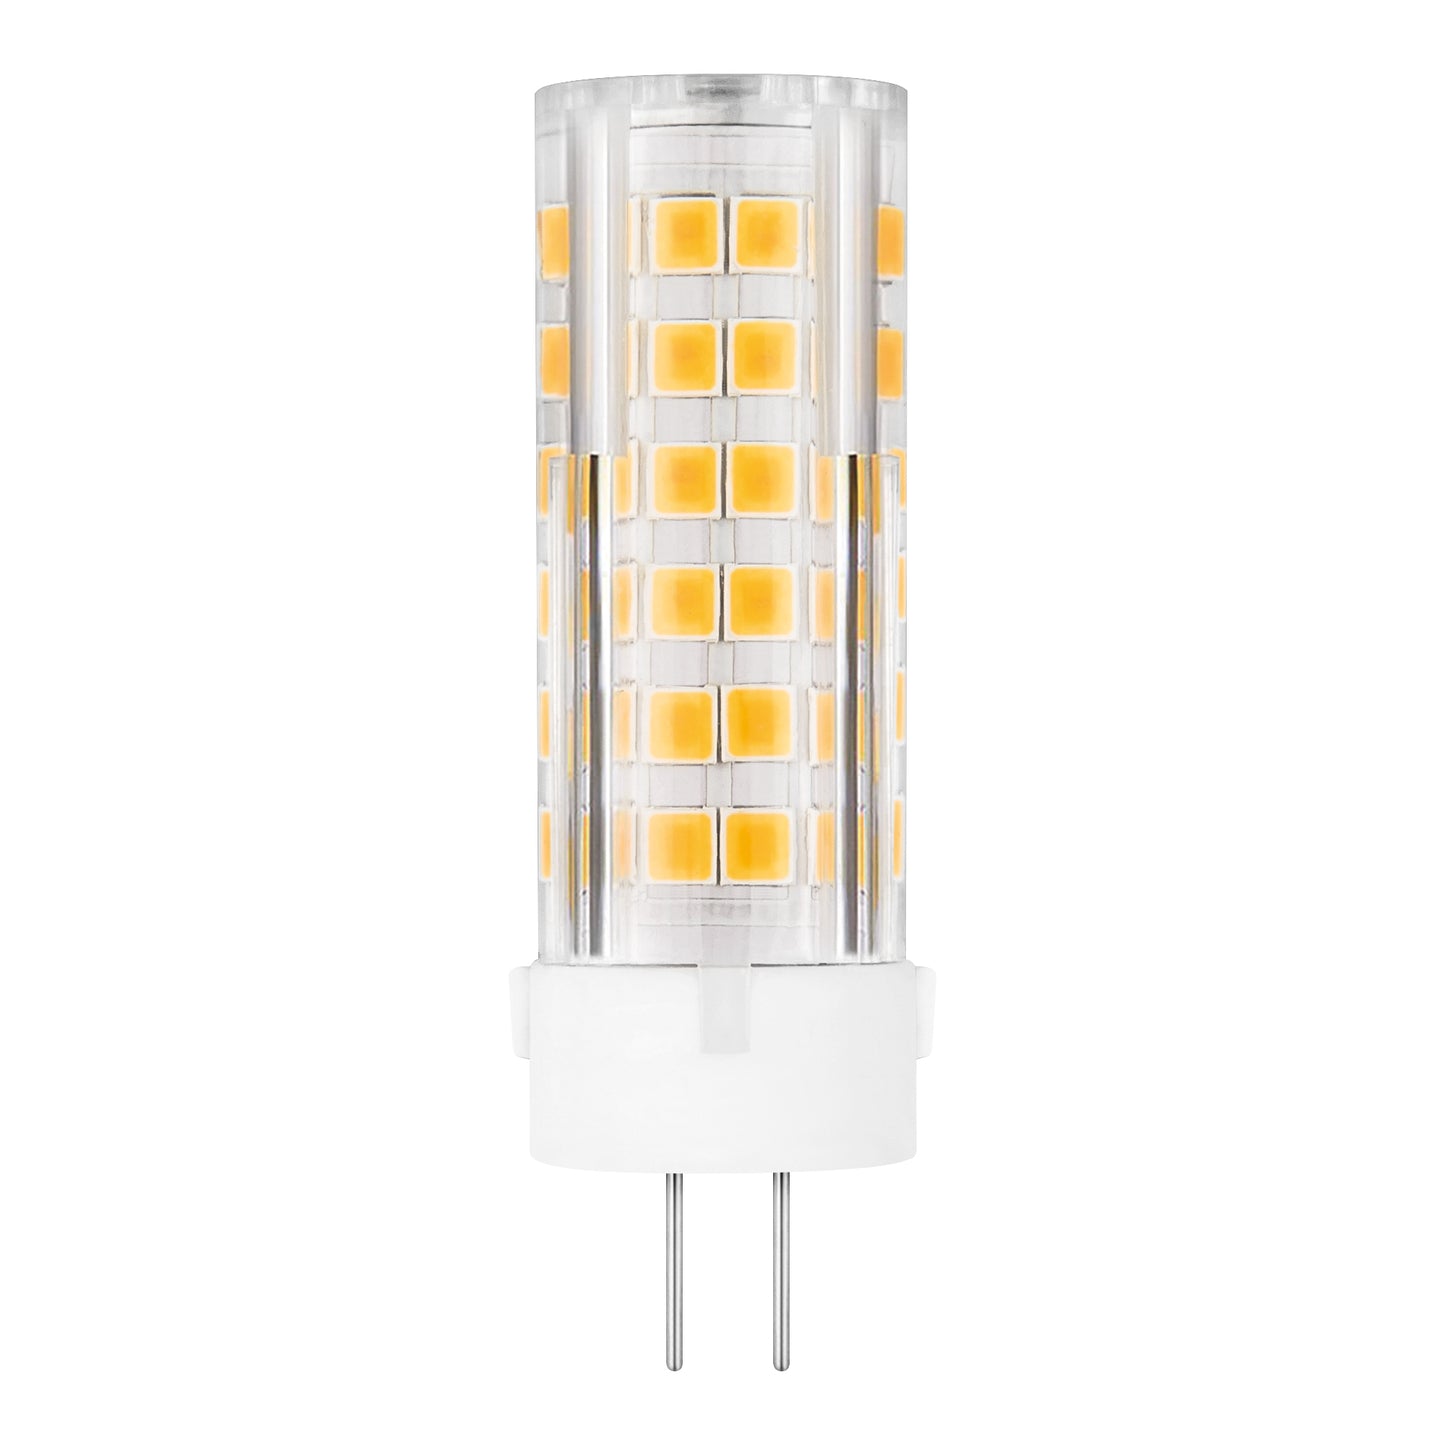 LAMPE LED MATEL G4 ALUMINIUM PC 12V 5W 